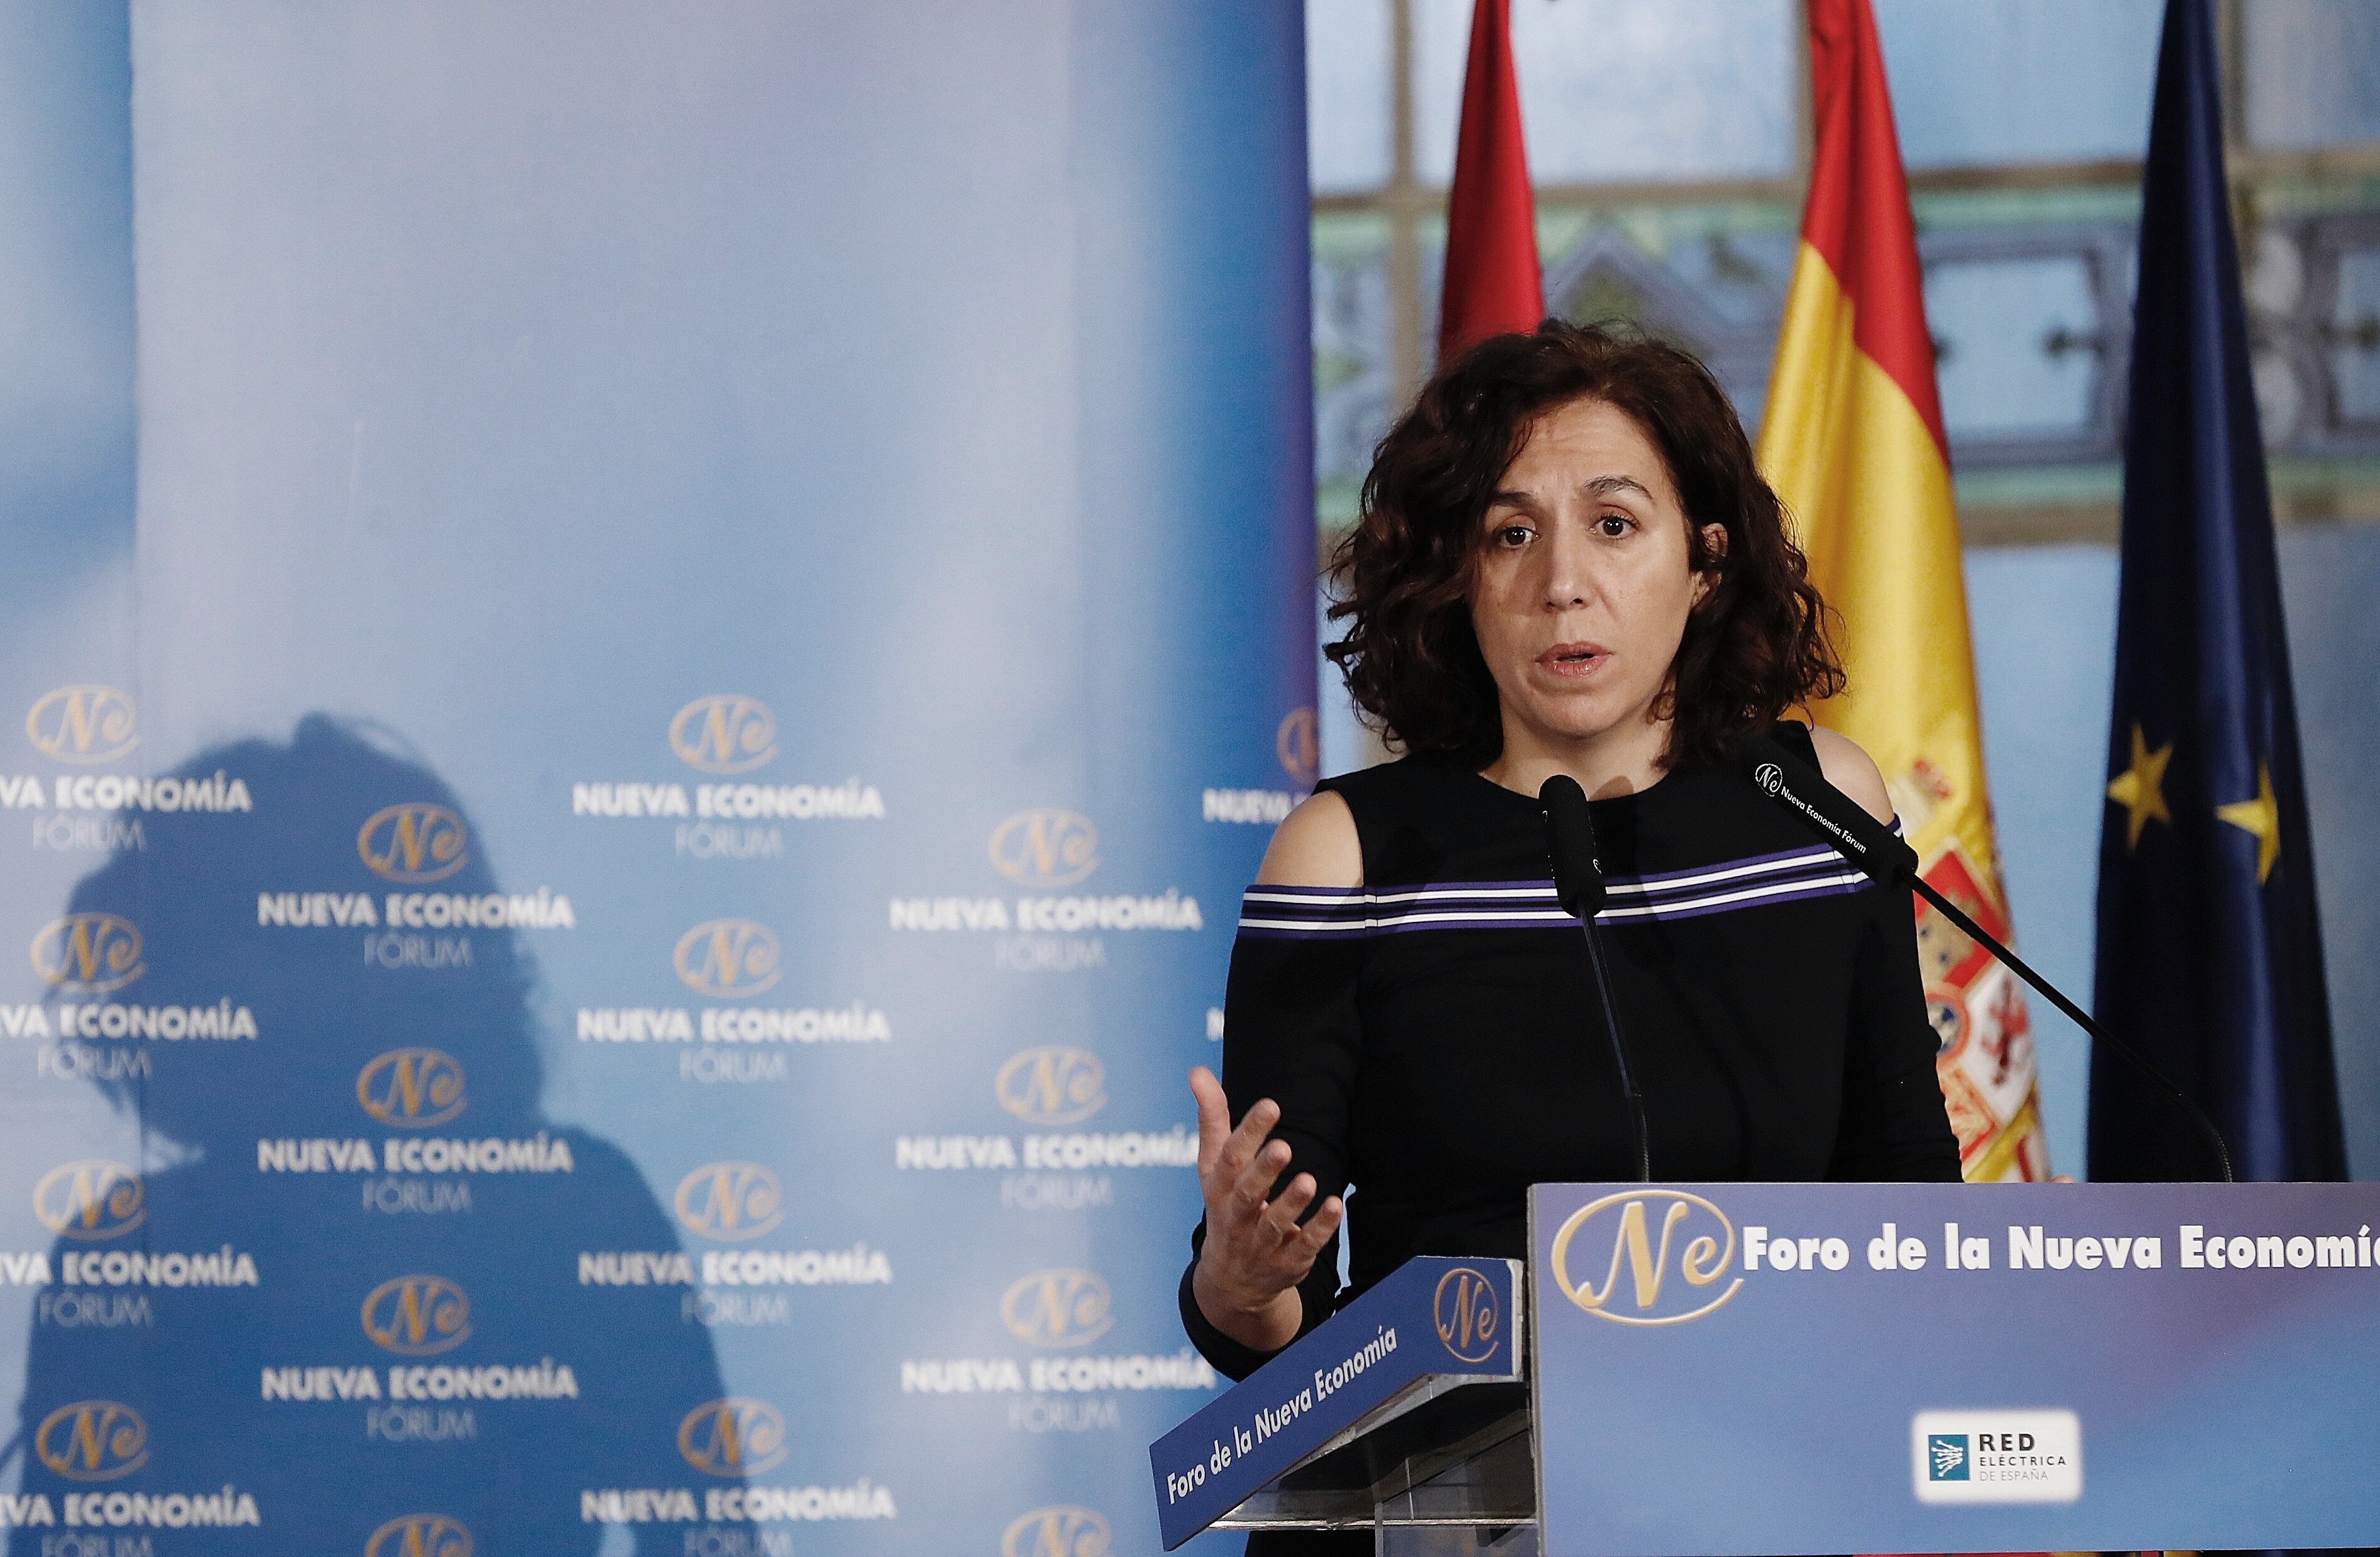 Global Spain head Irene Lozano attacks Quim Torra directly in Twitter exchange